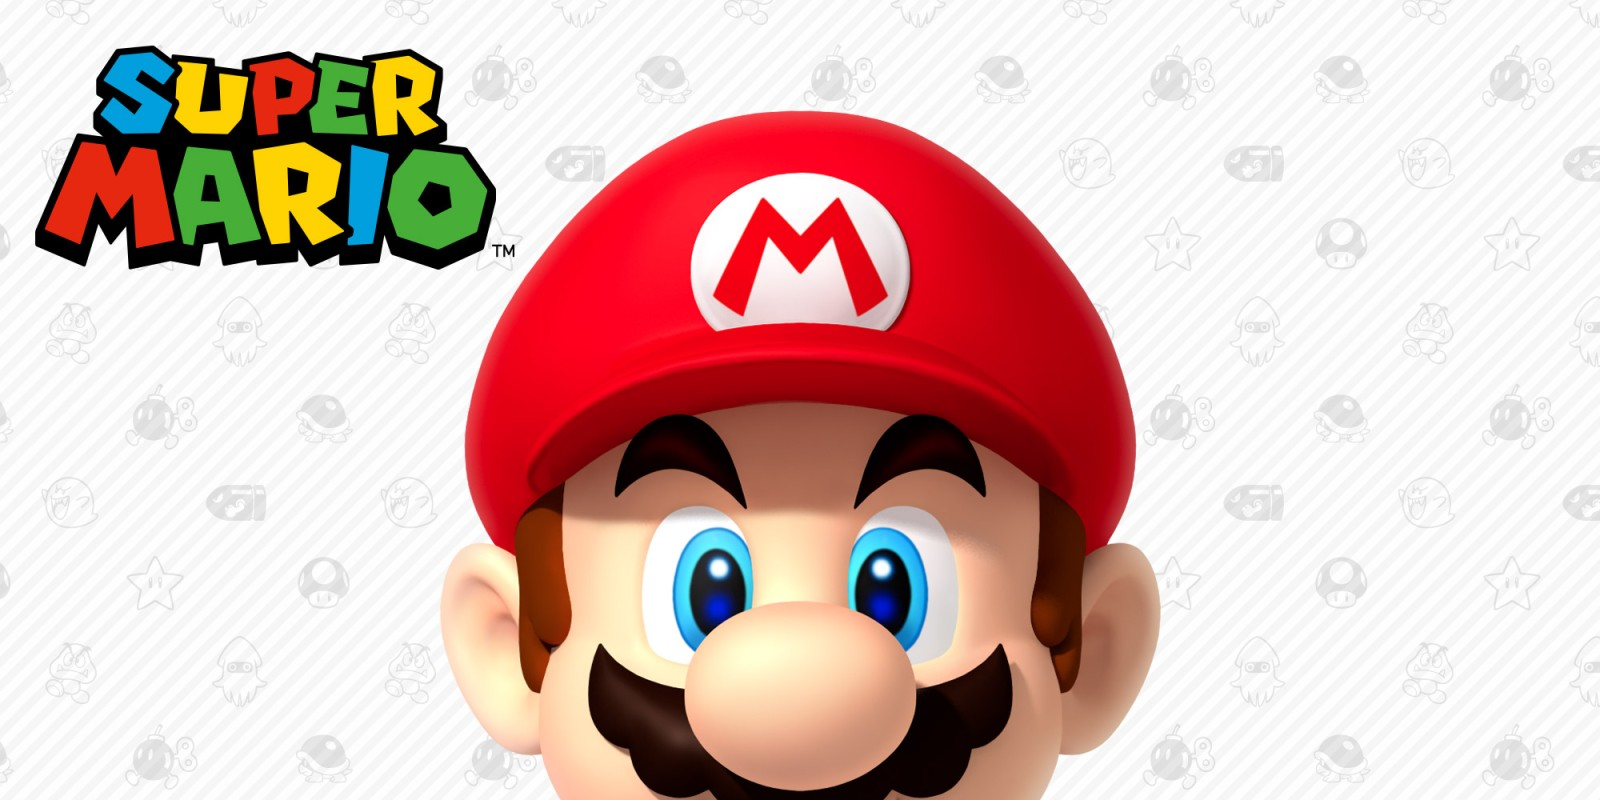 Image: Nintendo - It's-a me, Mario!